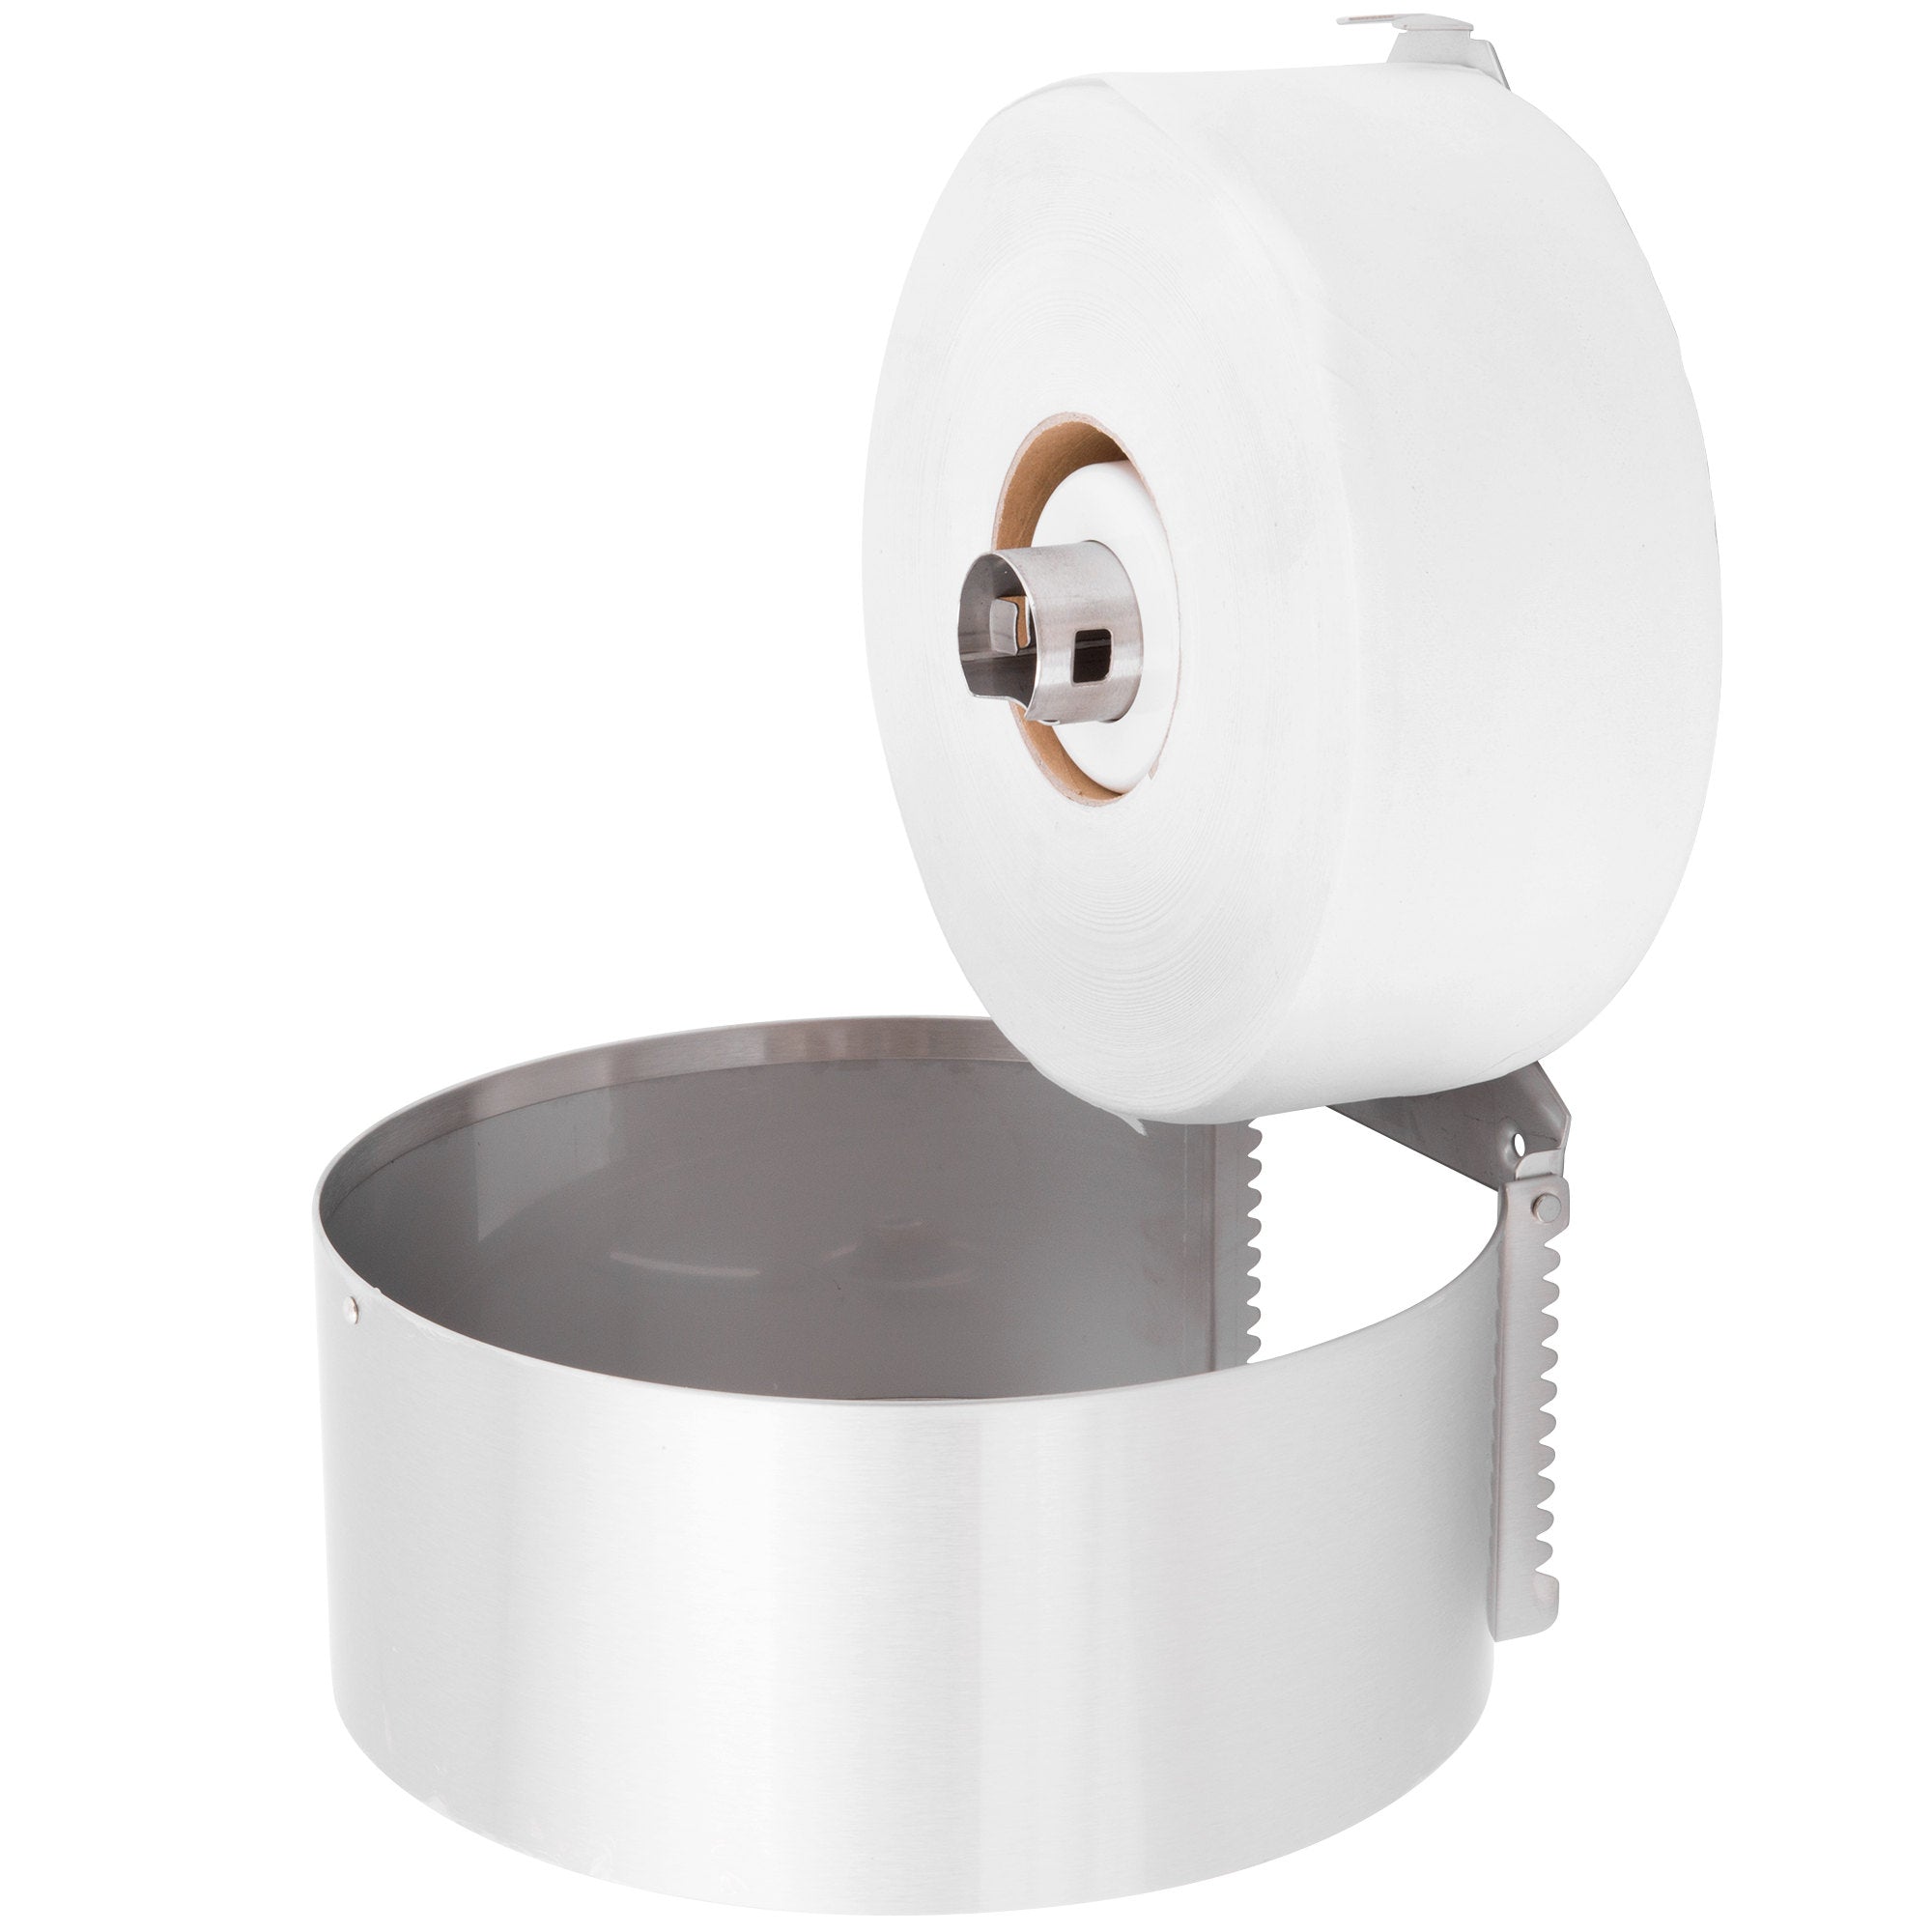 Bobrick B-2890 Jumbo-Roll Toilet Tissue Dispenser, Single